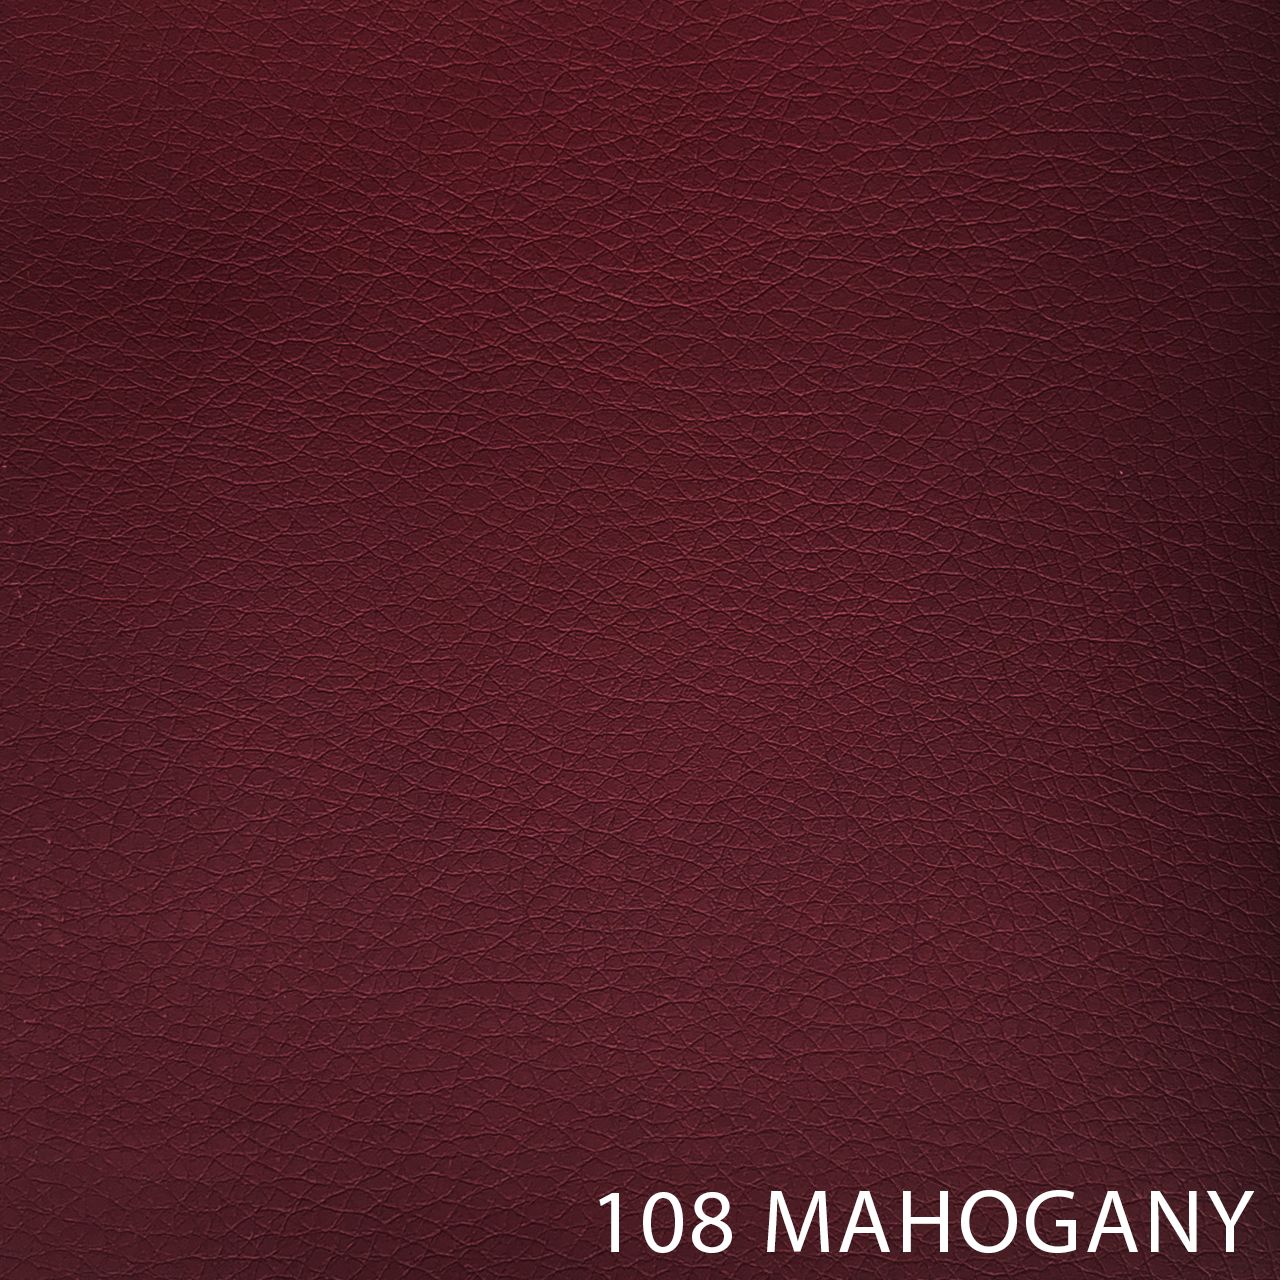 108 MAHOGANY